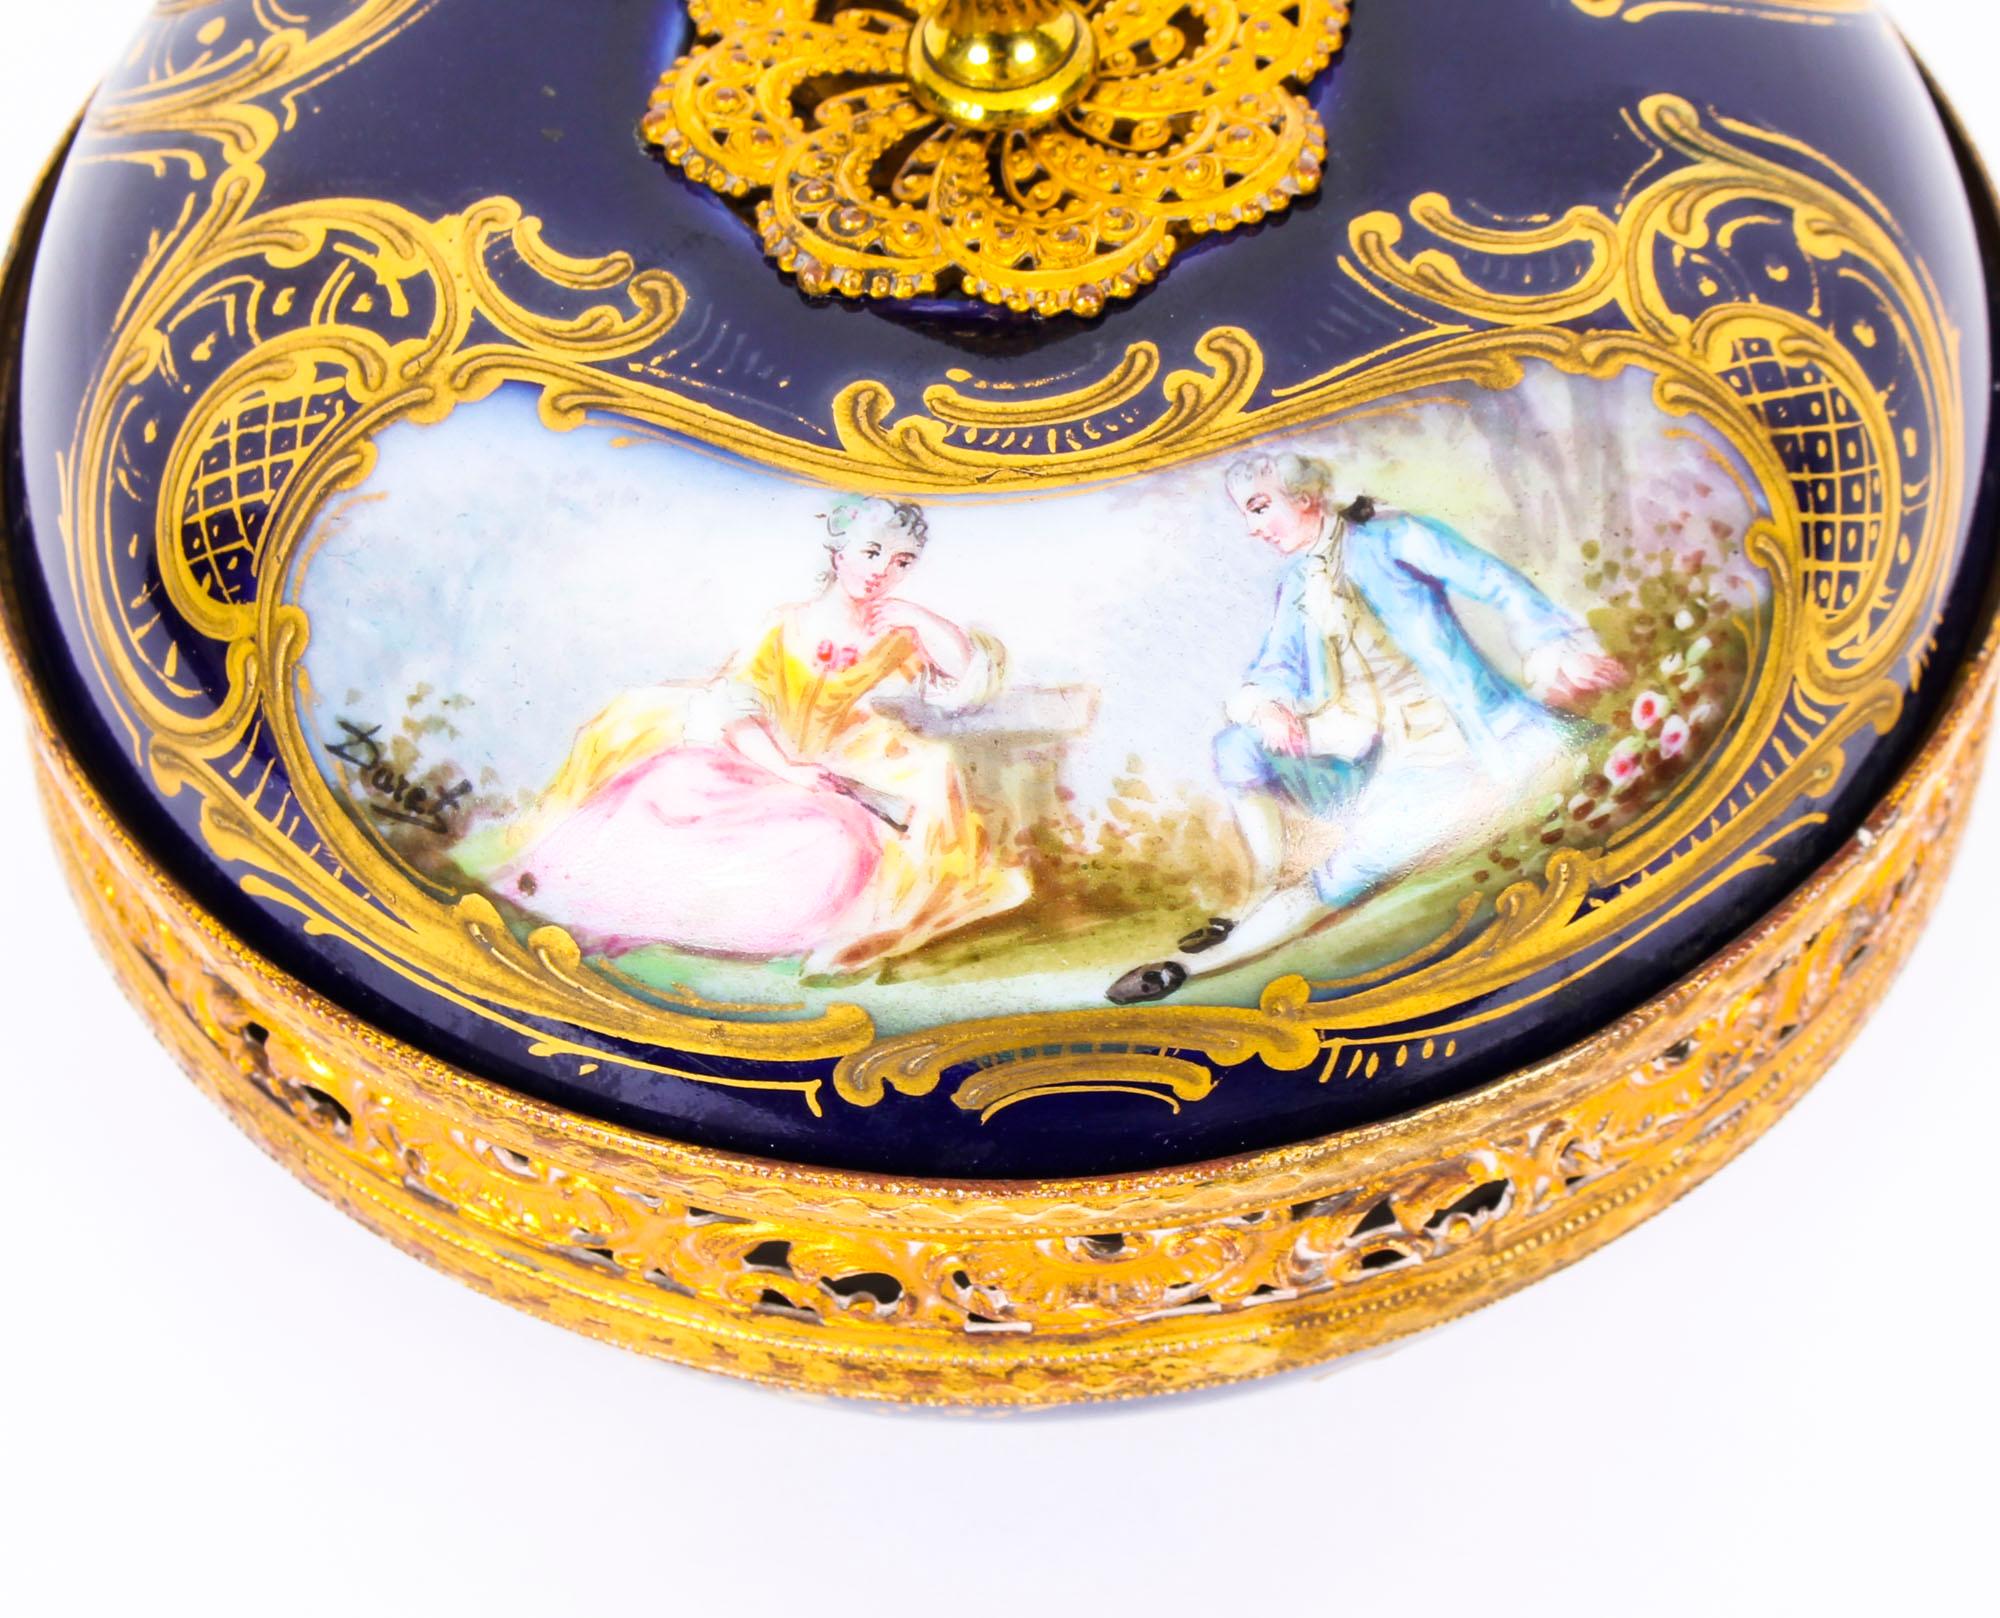 Antique Sèvres Bleu Royale Porcelain Pot-Pourri Bowl and Cover Stamped 1846 4